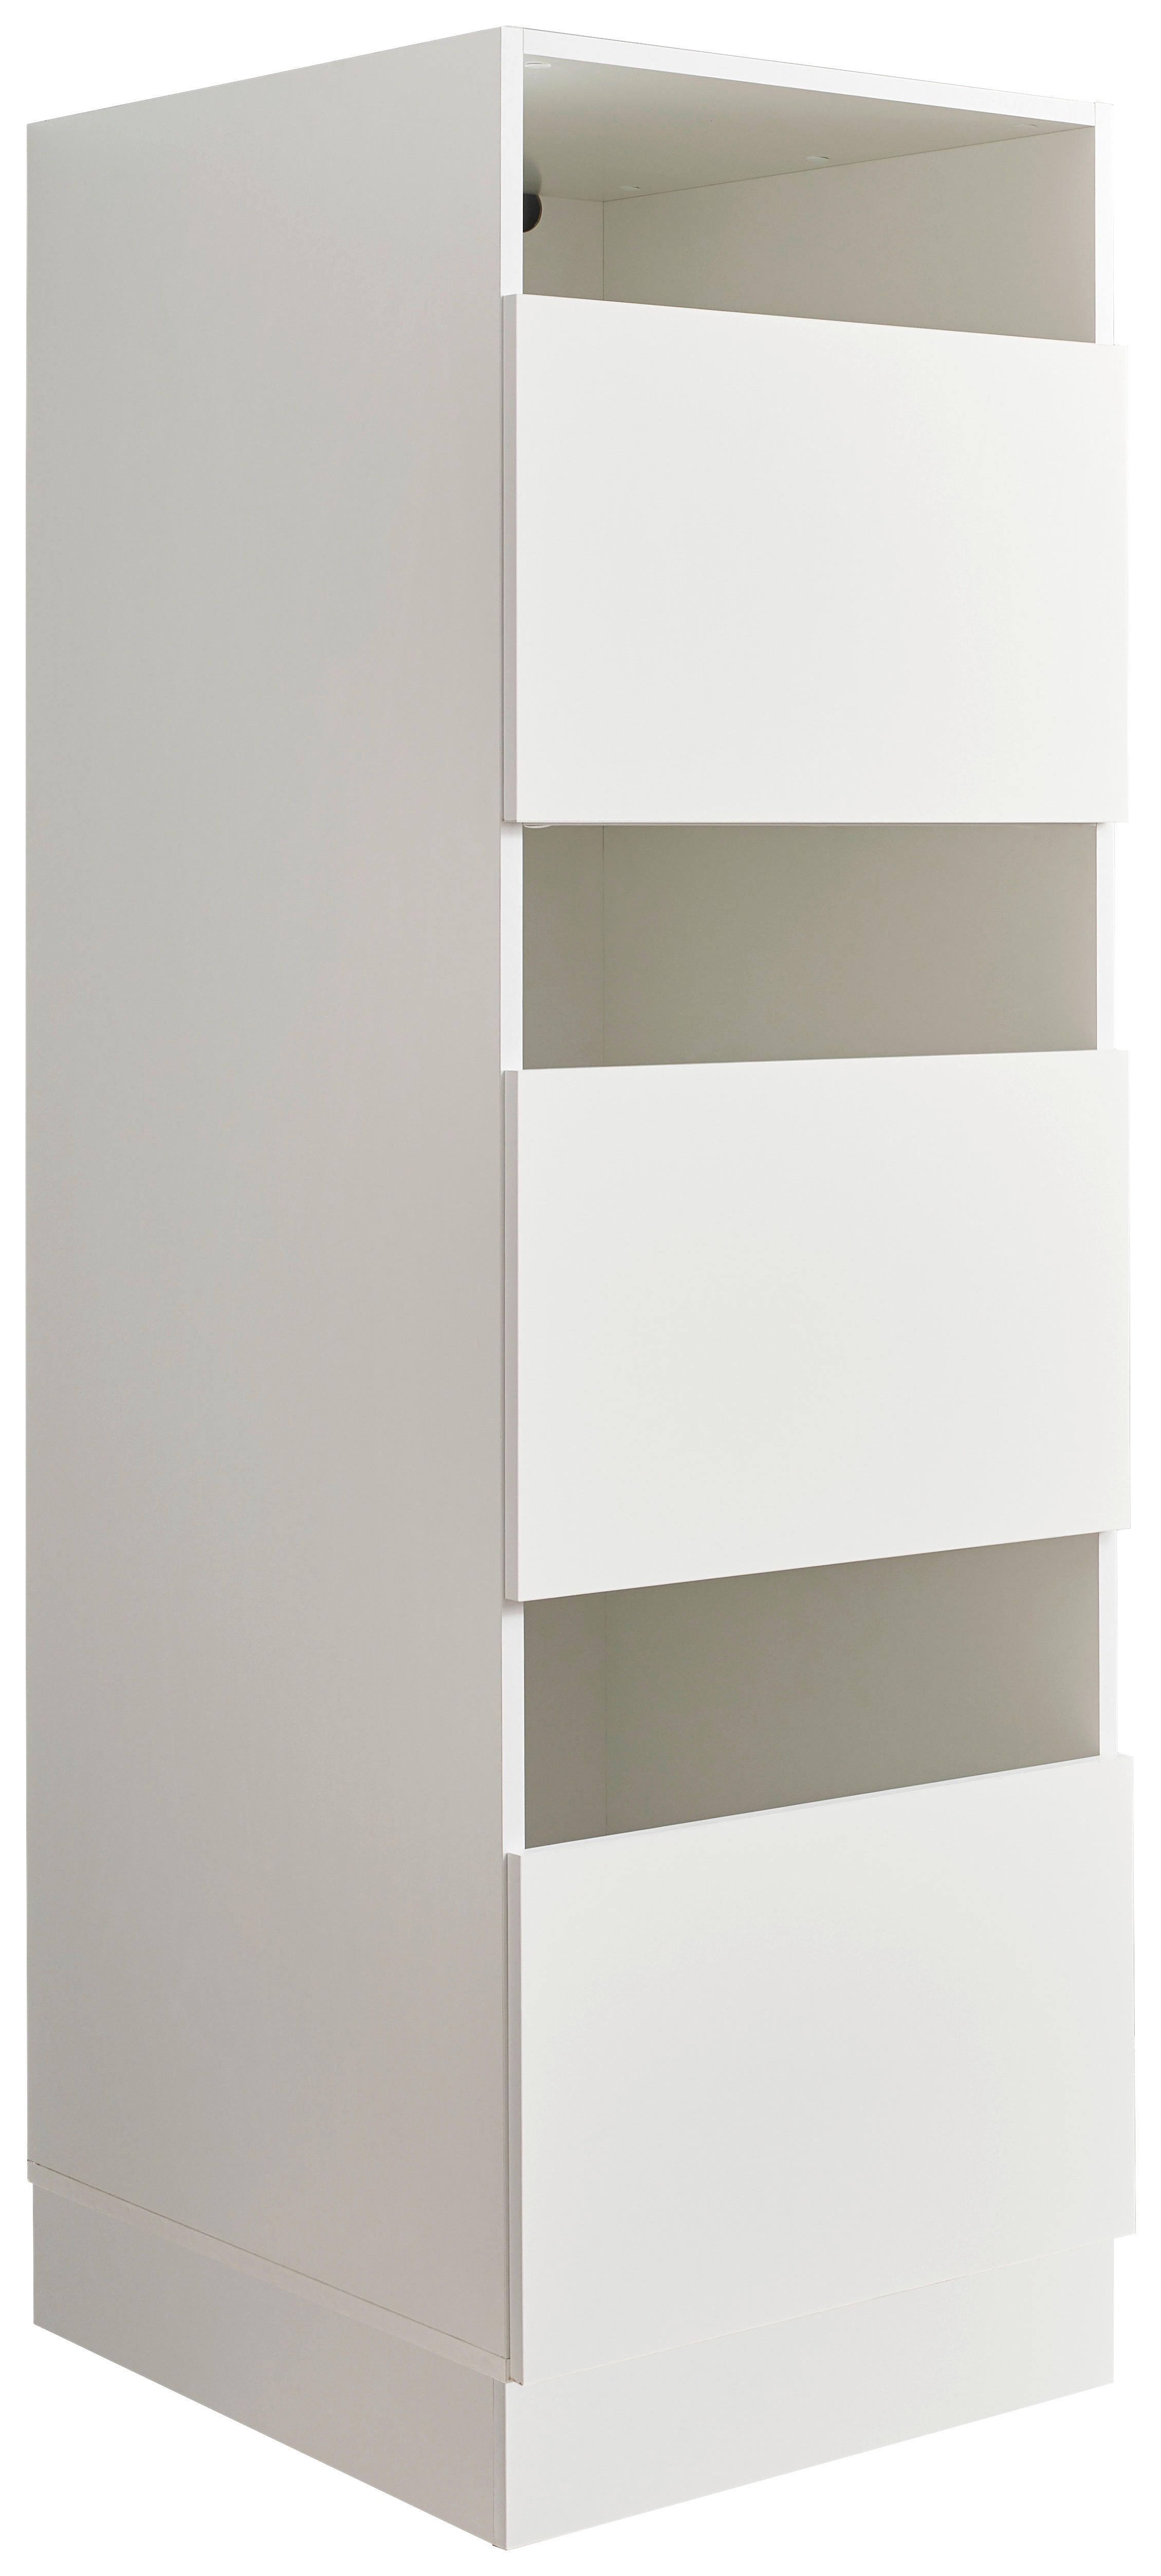 MEHRZWECKSCHRANK 50/162/67,5 cm  - Schwarz/Weiß, Design, Holzwerkstoff/Kunststoff (50/162/67,5cm)